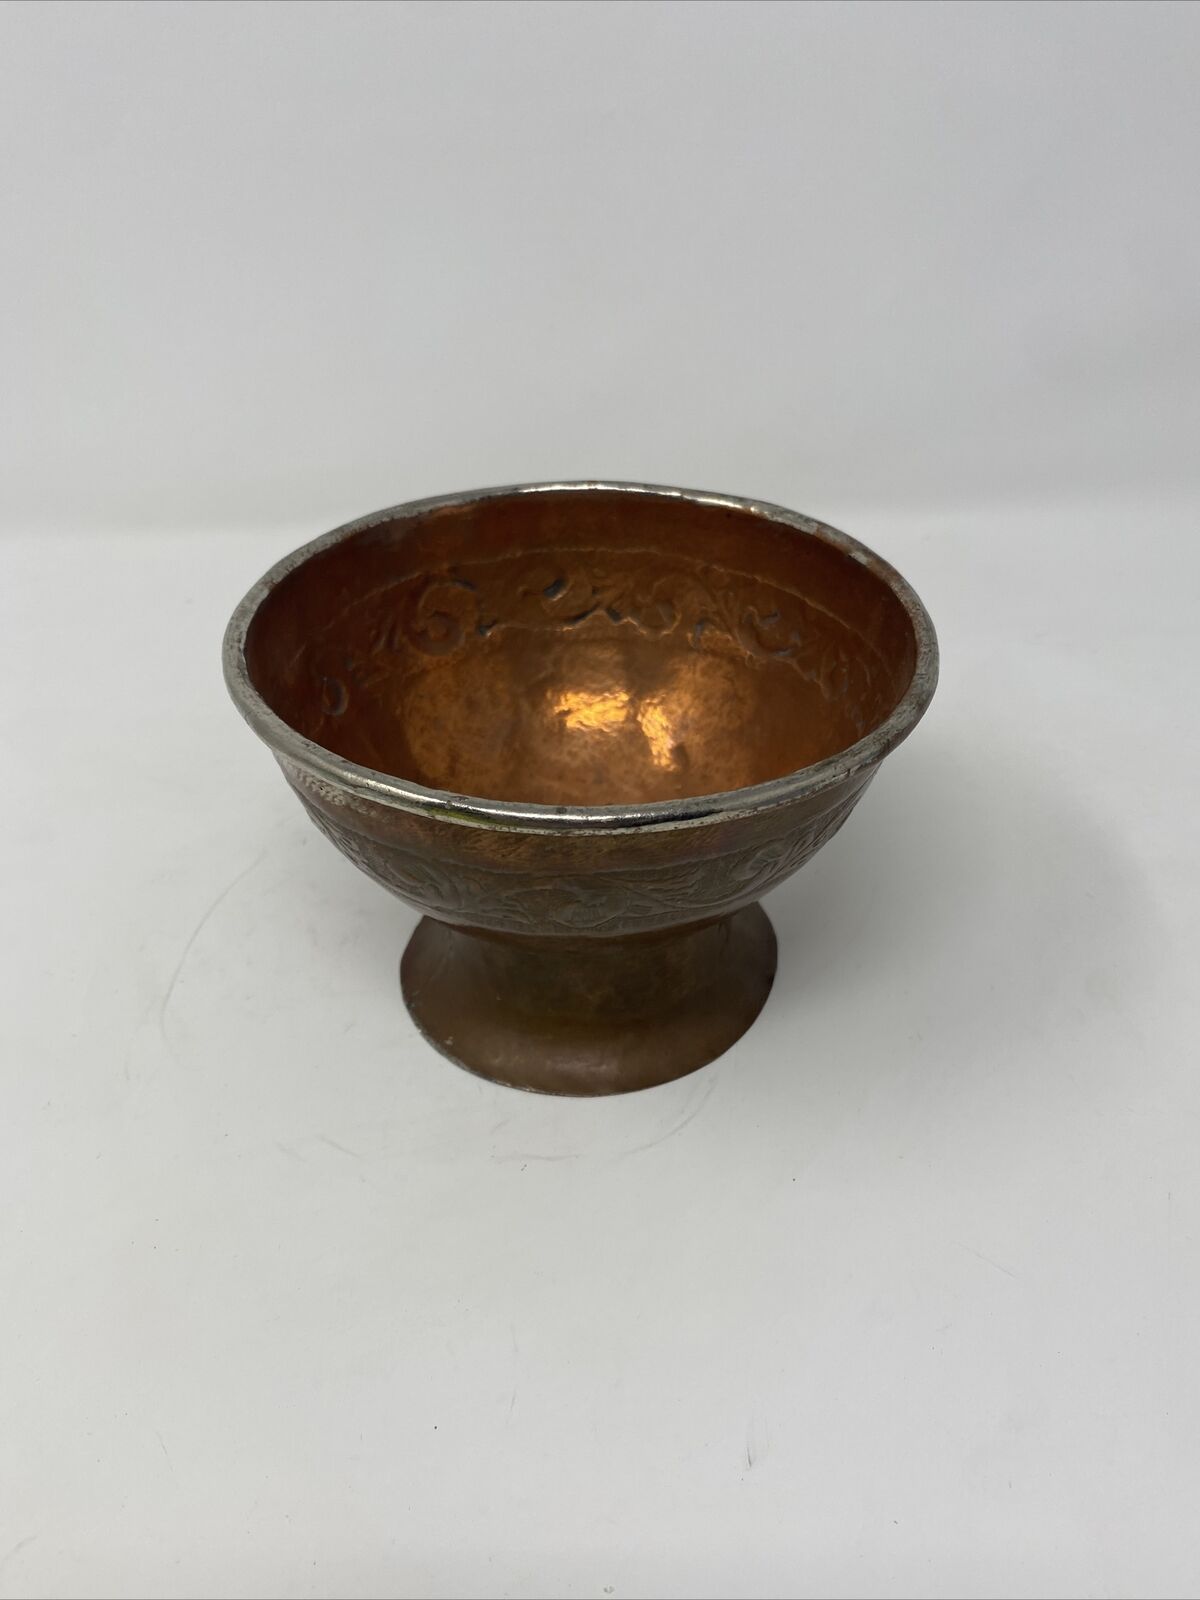 Antique Vintage Copper Bowl Cup Pedestal Dish Hammered Tooled Ornate